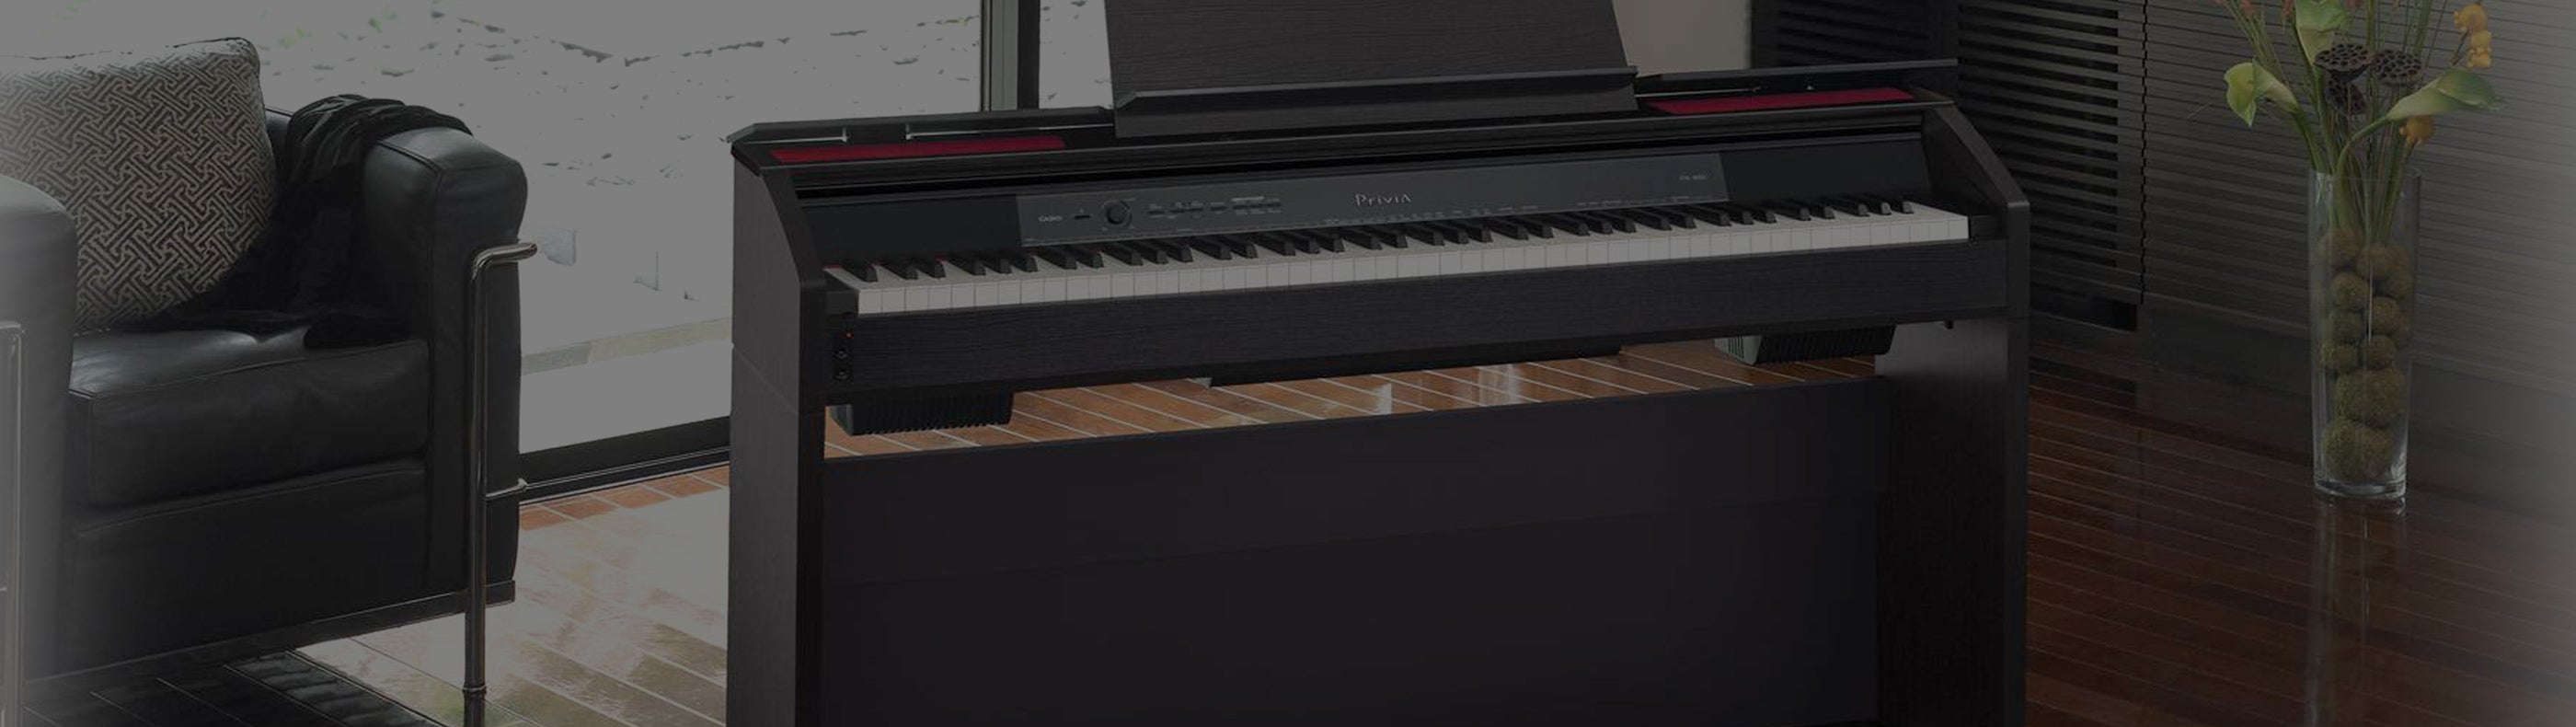 Privia Digital Pianos